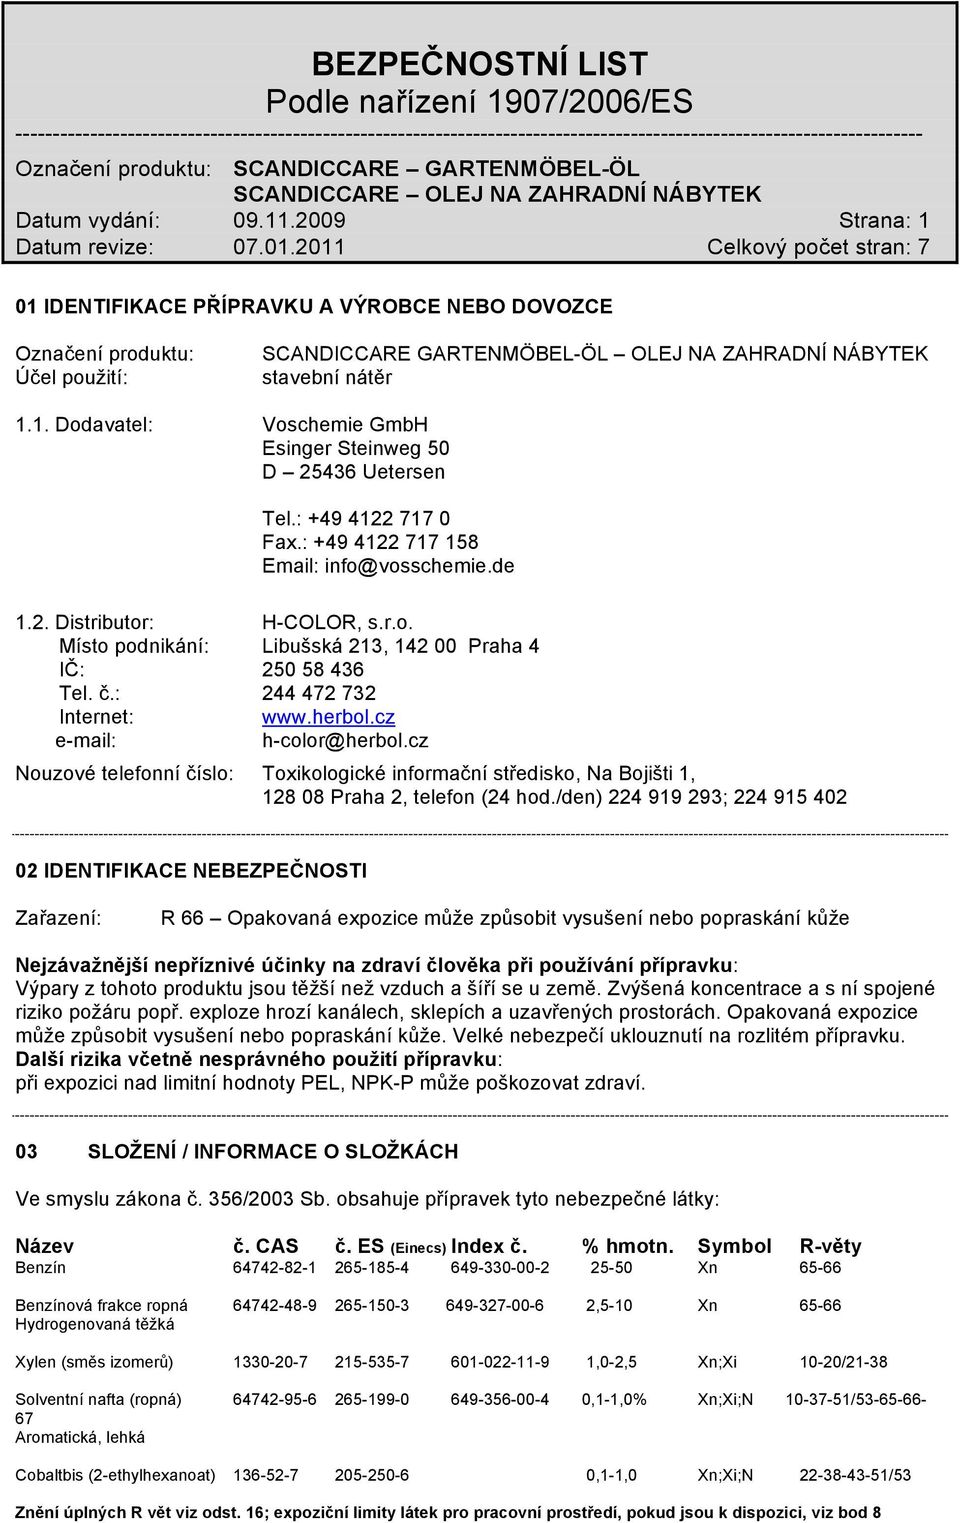 herbol.cz e-mail: h-color@herbol.cz Nouzové telefonní číslo: Toxikologické informační středisko, Na Bojišti 1, 128 08 Praha 2, telefon (24 hod.